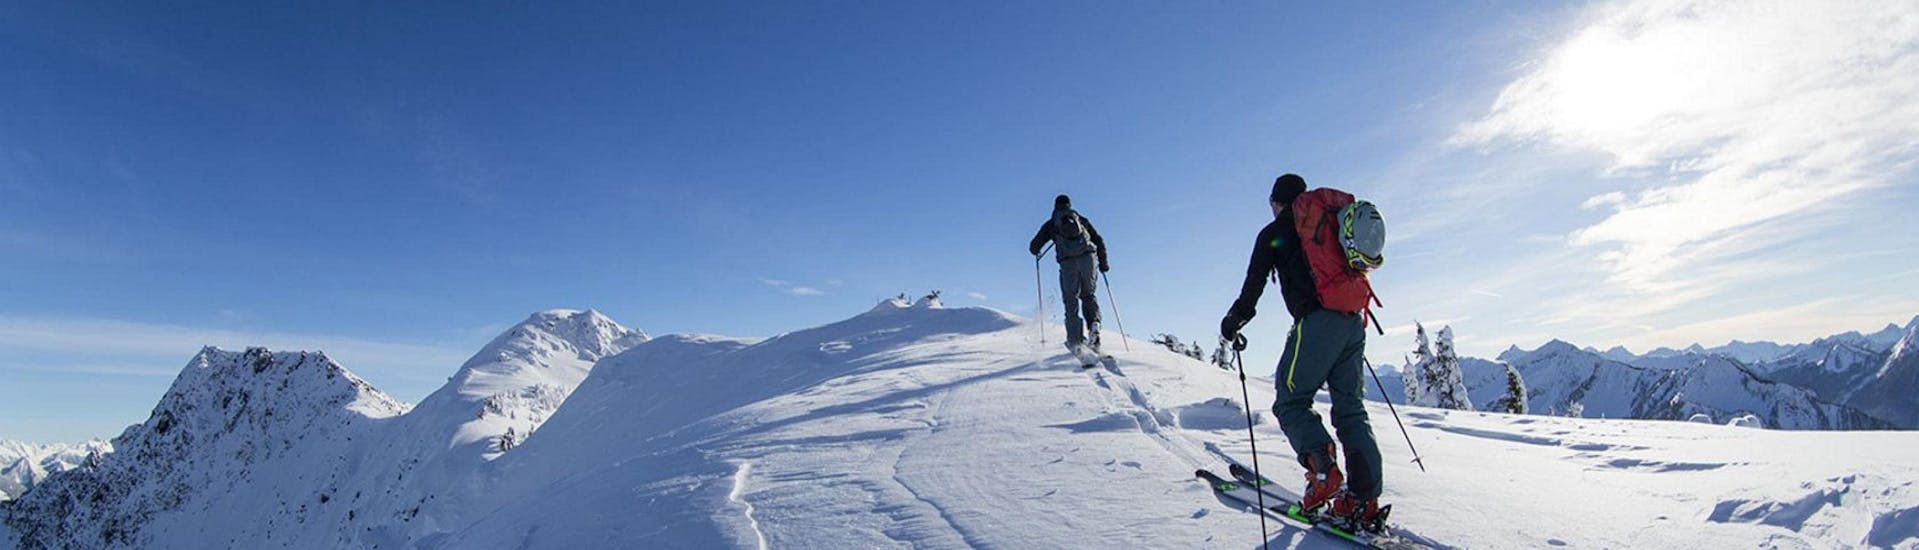 Clases de esquí de travesía para avanzados.